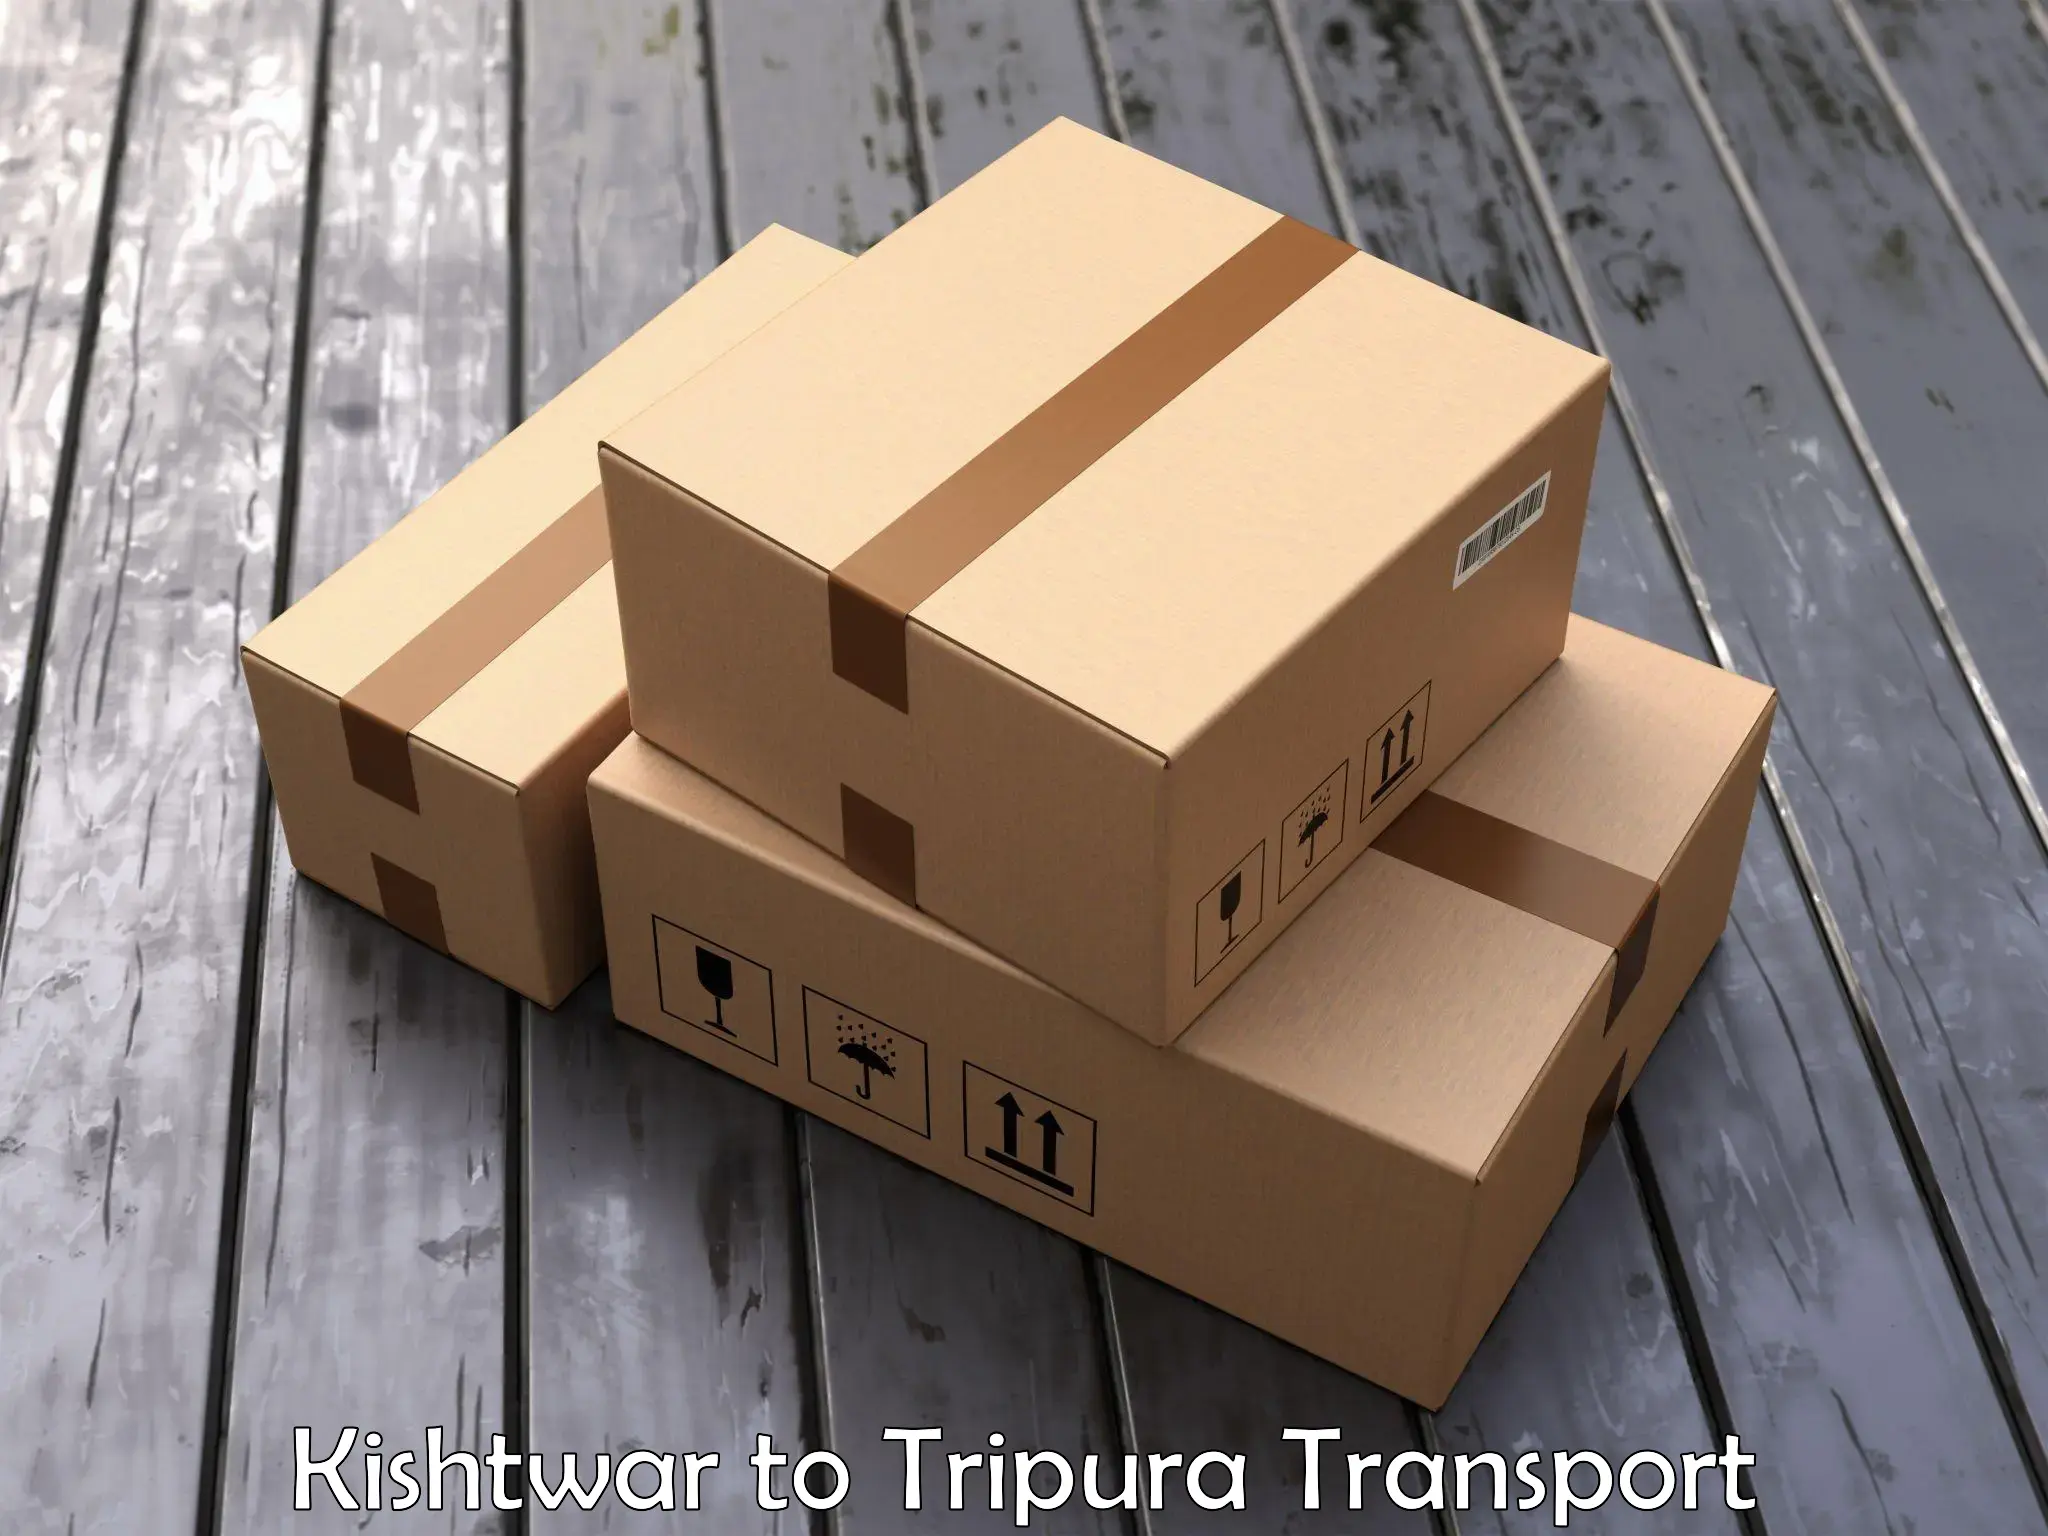 International cargo transportation services Kishtwar to Dharmanagar